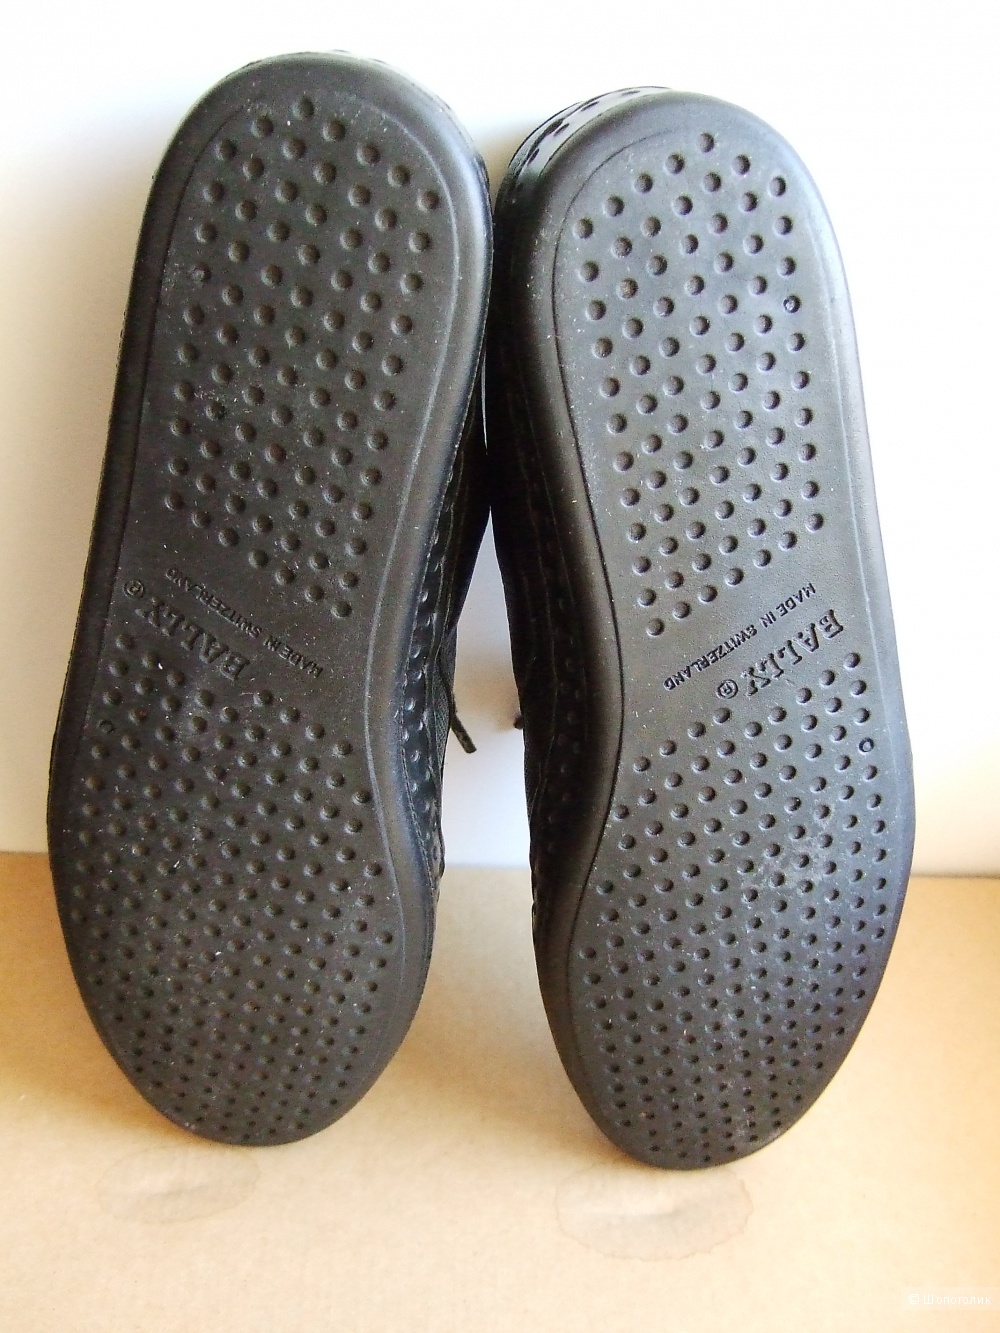 Bally кроссовки черные. Натуральная кожа, Швейцария. р.8, 26см, на 39-39,5